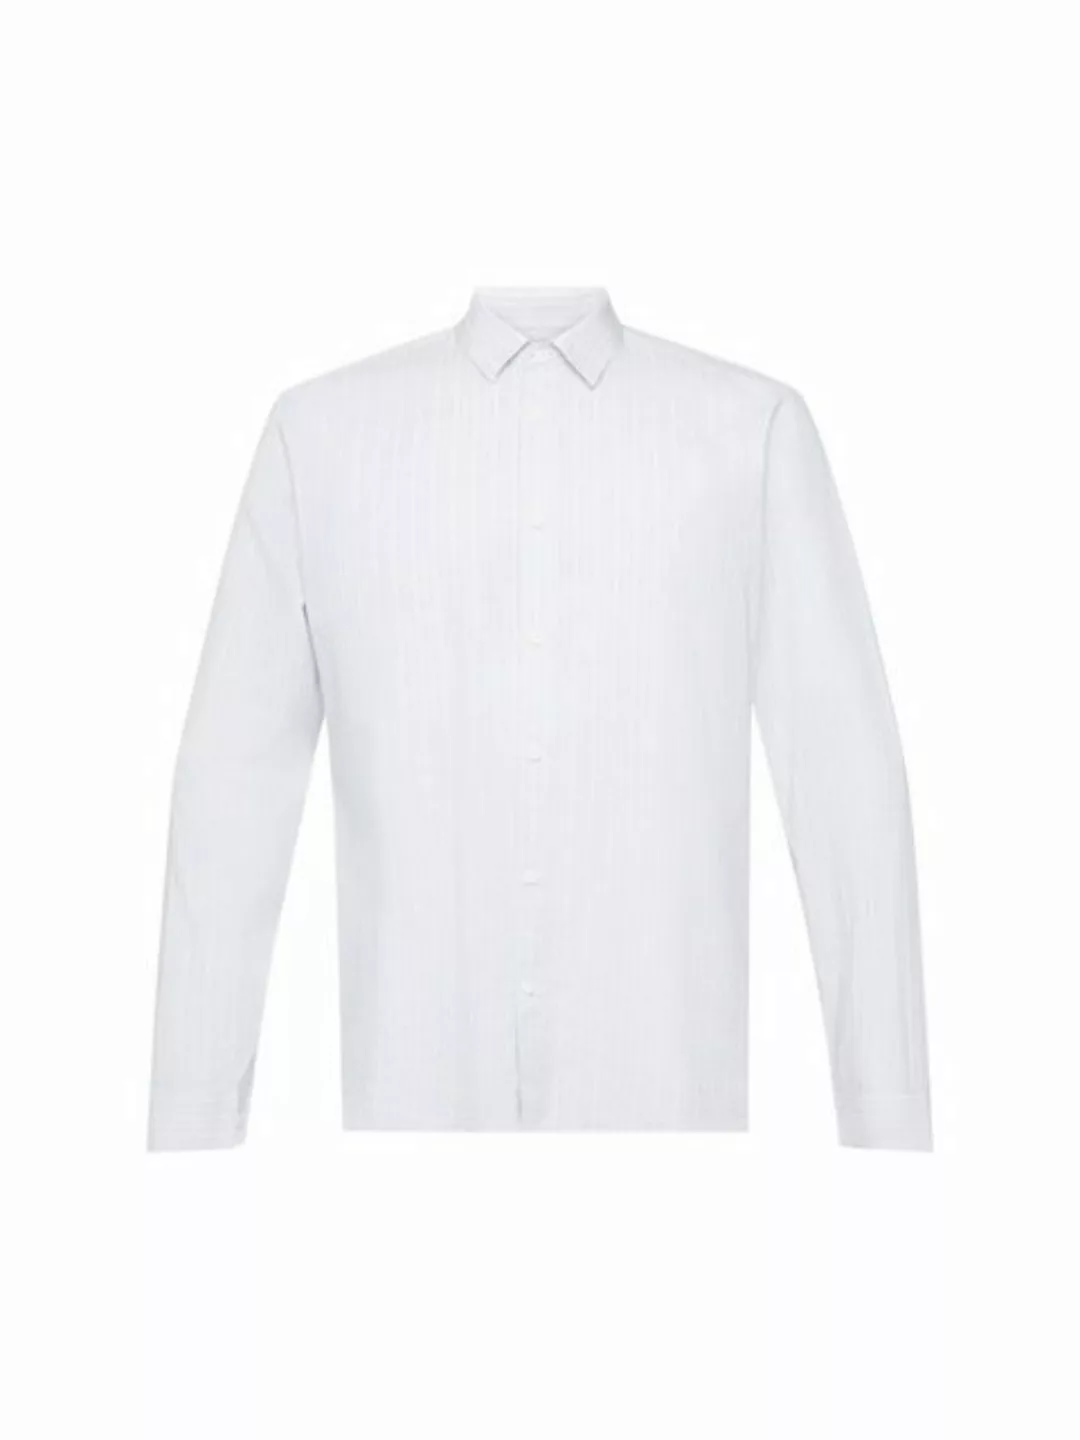 Esprit Collection Businesshemd Hemd mit Streifen günstig online kaufen